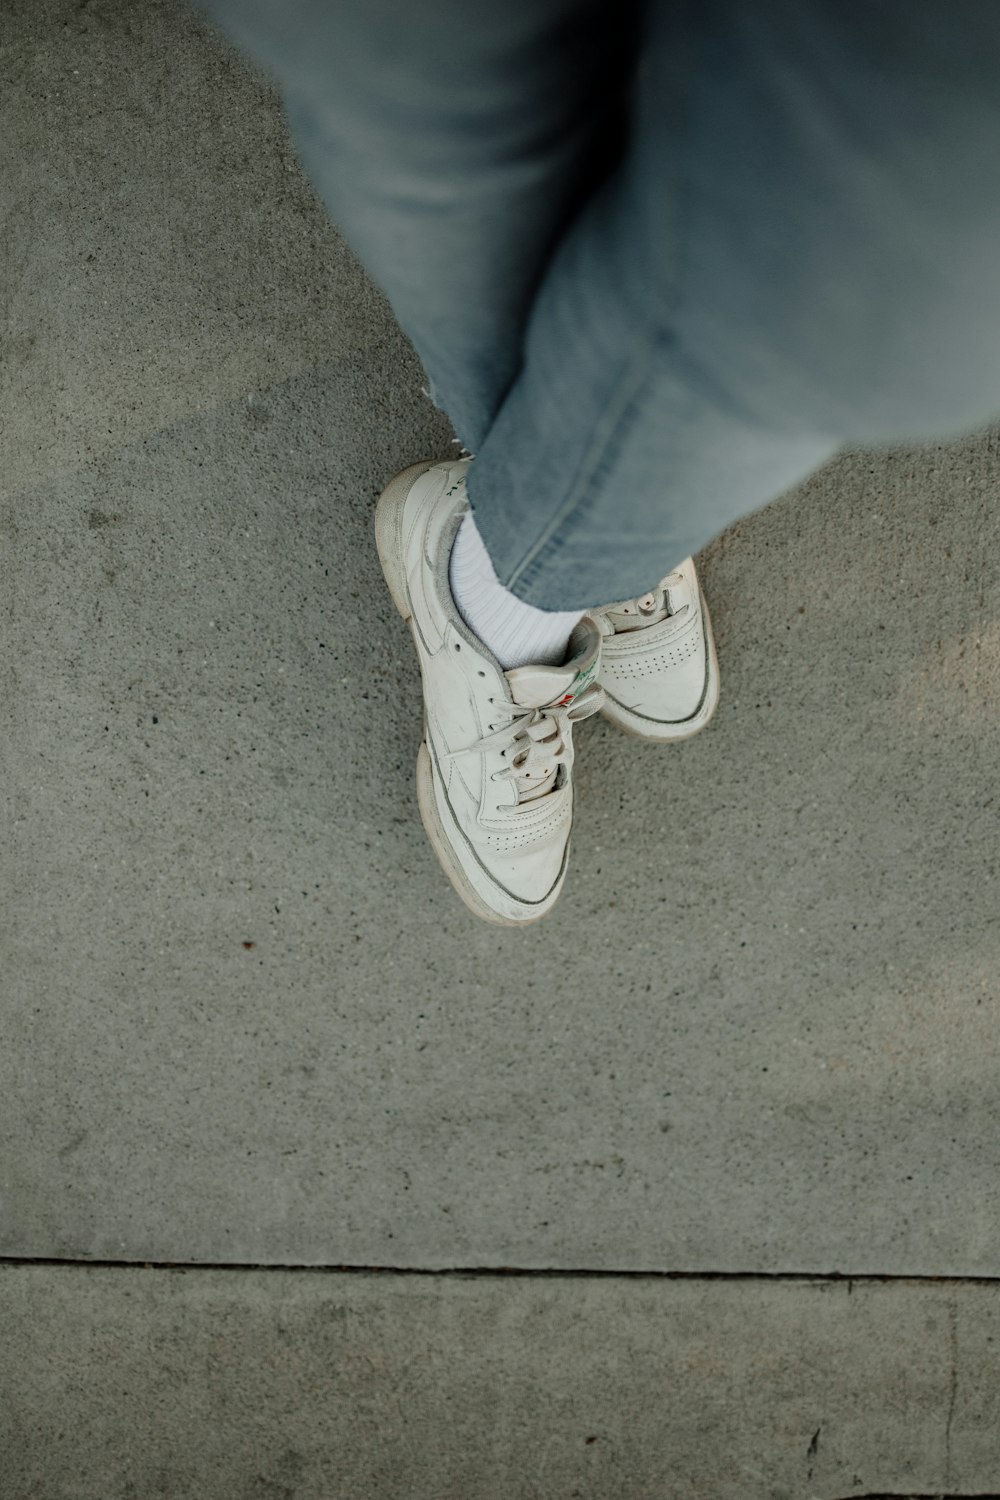 eine Person, die mit weißen Schuhen auf einem Bürgersteig steht